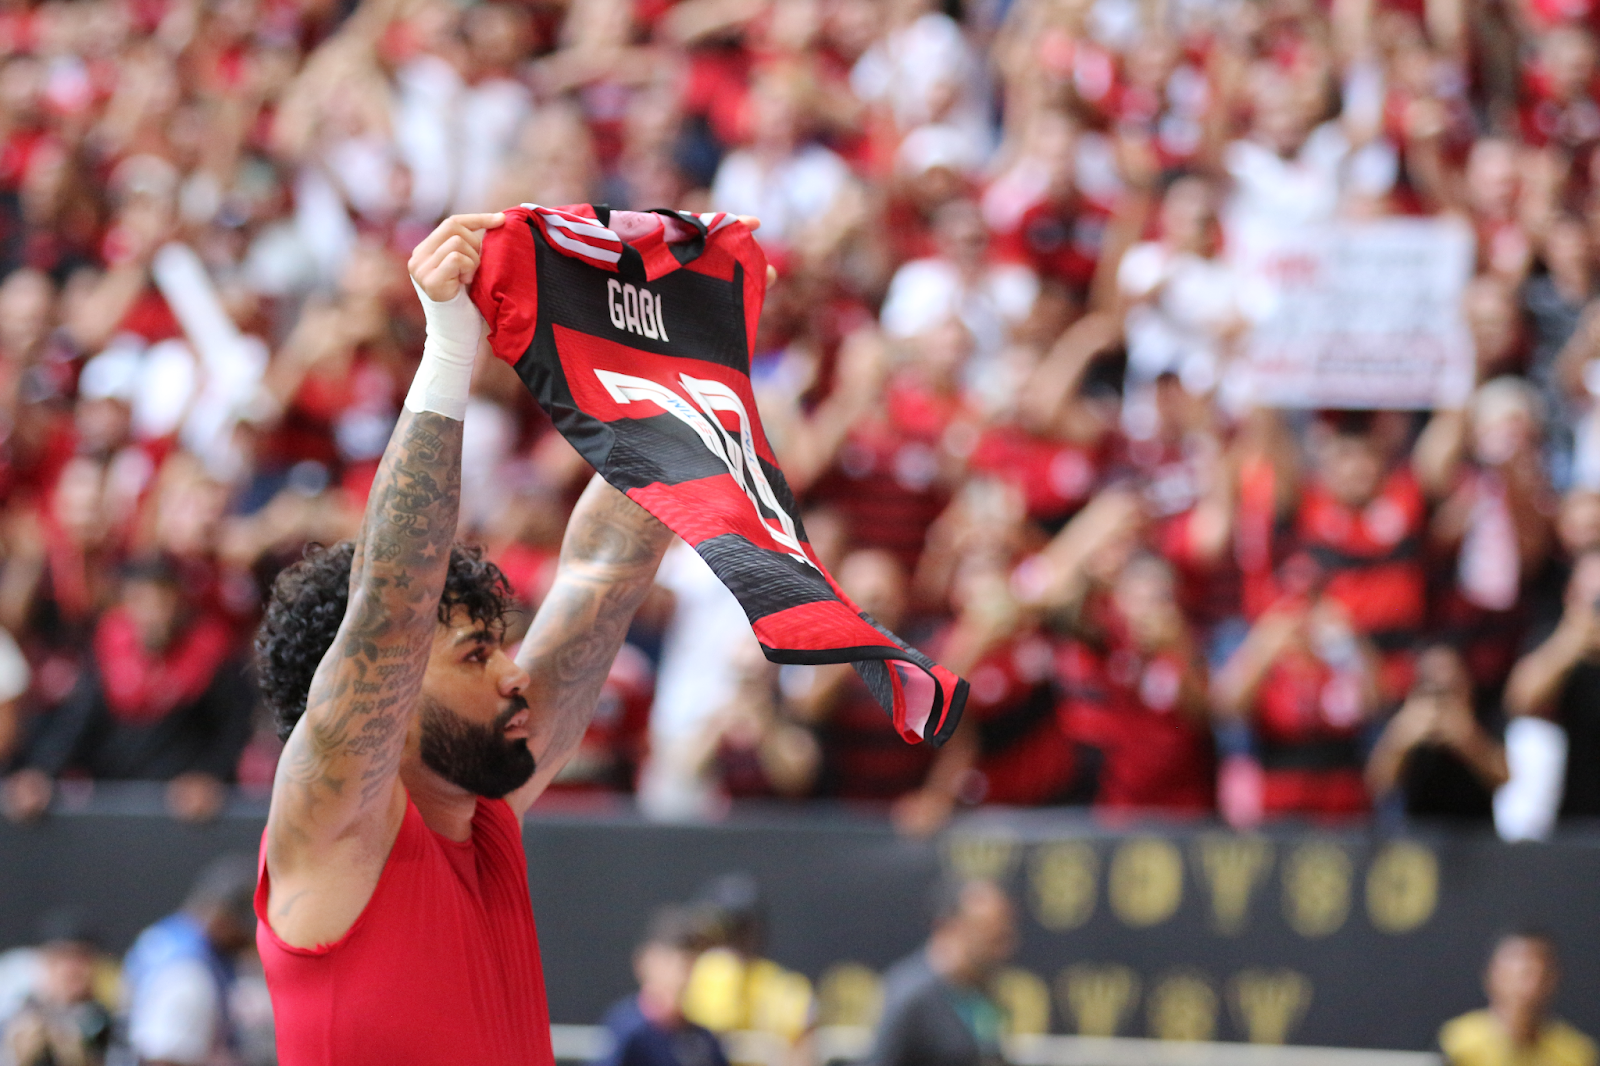 Supercopa: Flamengo vence Palmeiras nos pênaltis e conquista título -  Agência de Notícias CEUB